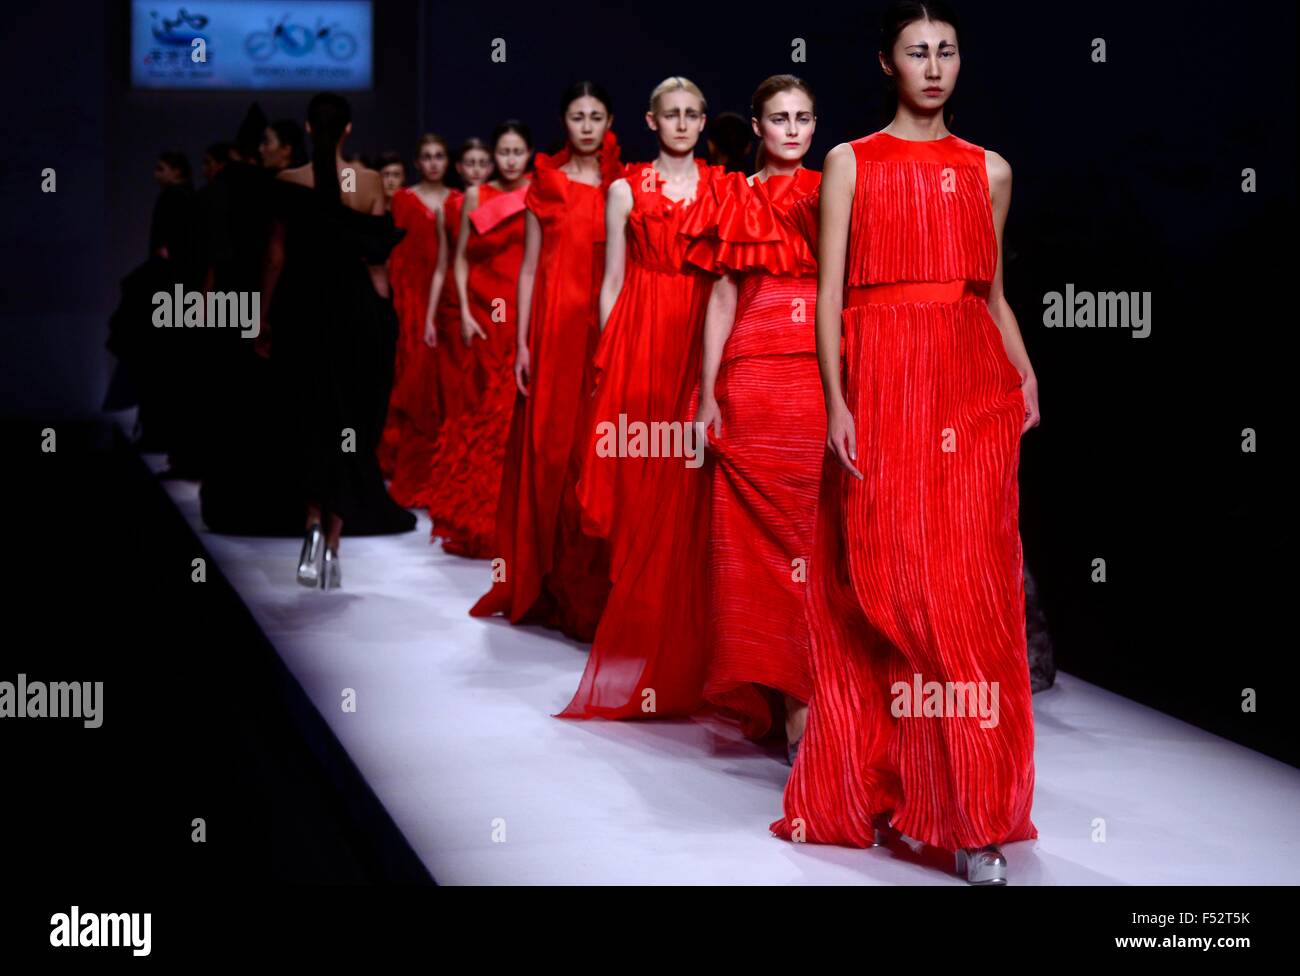 Pechino, Cina. 26 ott 2015. Modelli di creazioni di visualizzazione dell'ECO CHEN raccolta durante la China Fashion Week S/S 2016 a Pechino, in Cina, 26 ottobre, 2015. Credito: Zhao Xiaoming/Xinhua/Alamy Live News Foto Stock